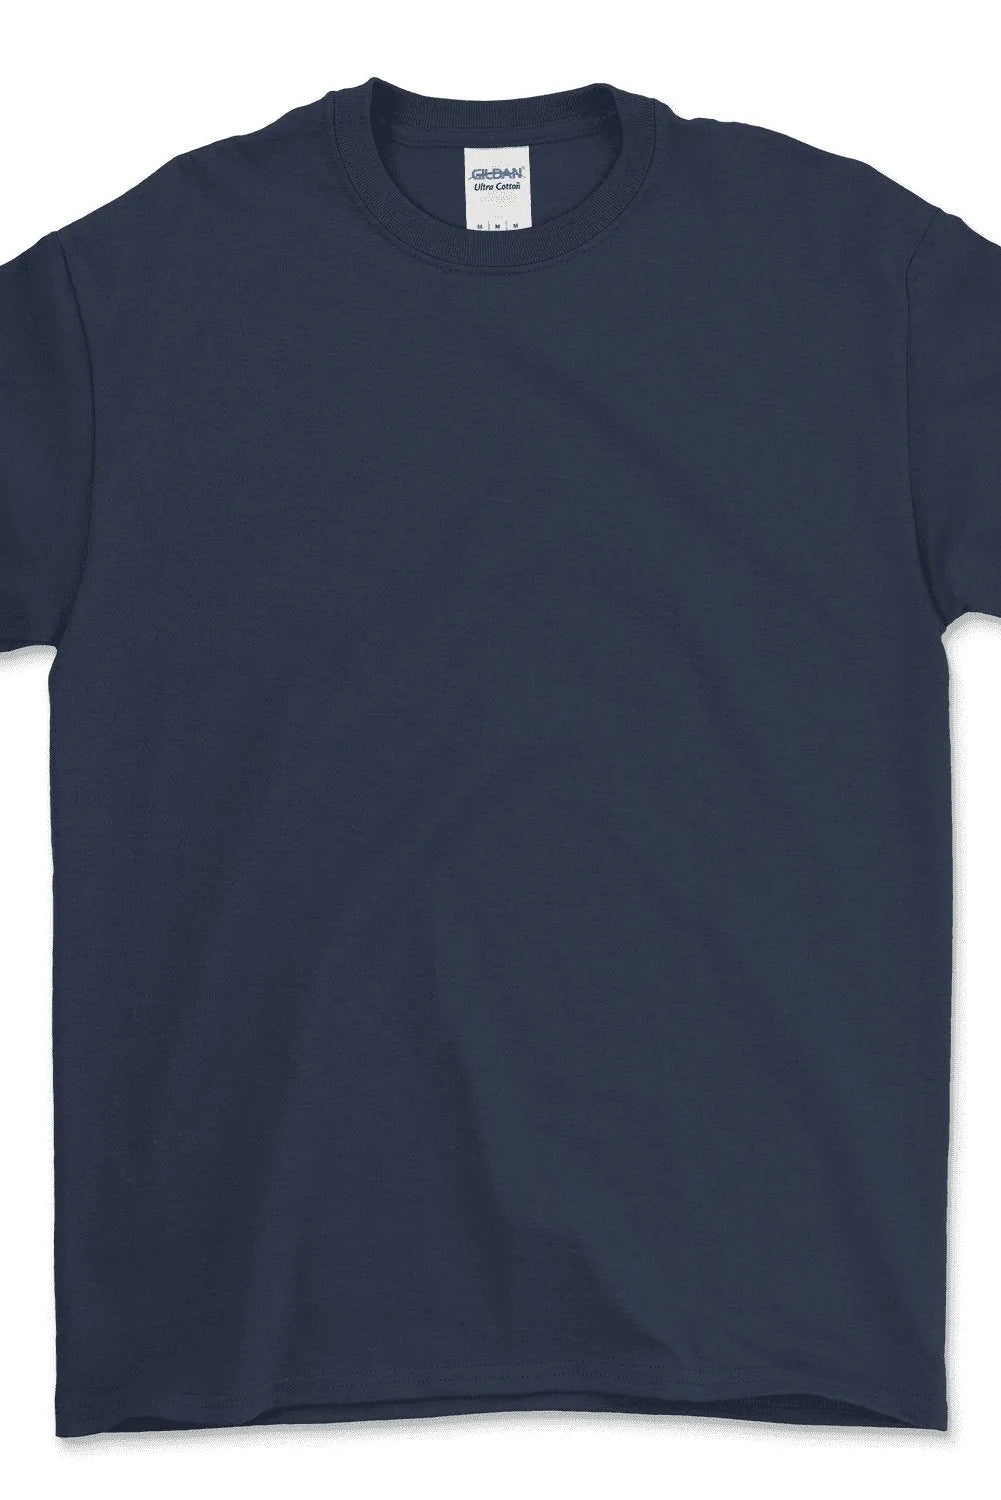 Ultra Cotton® T-Shirt - 2000 - Print Me Shirts